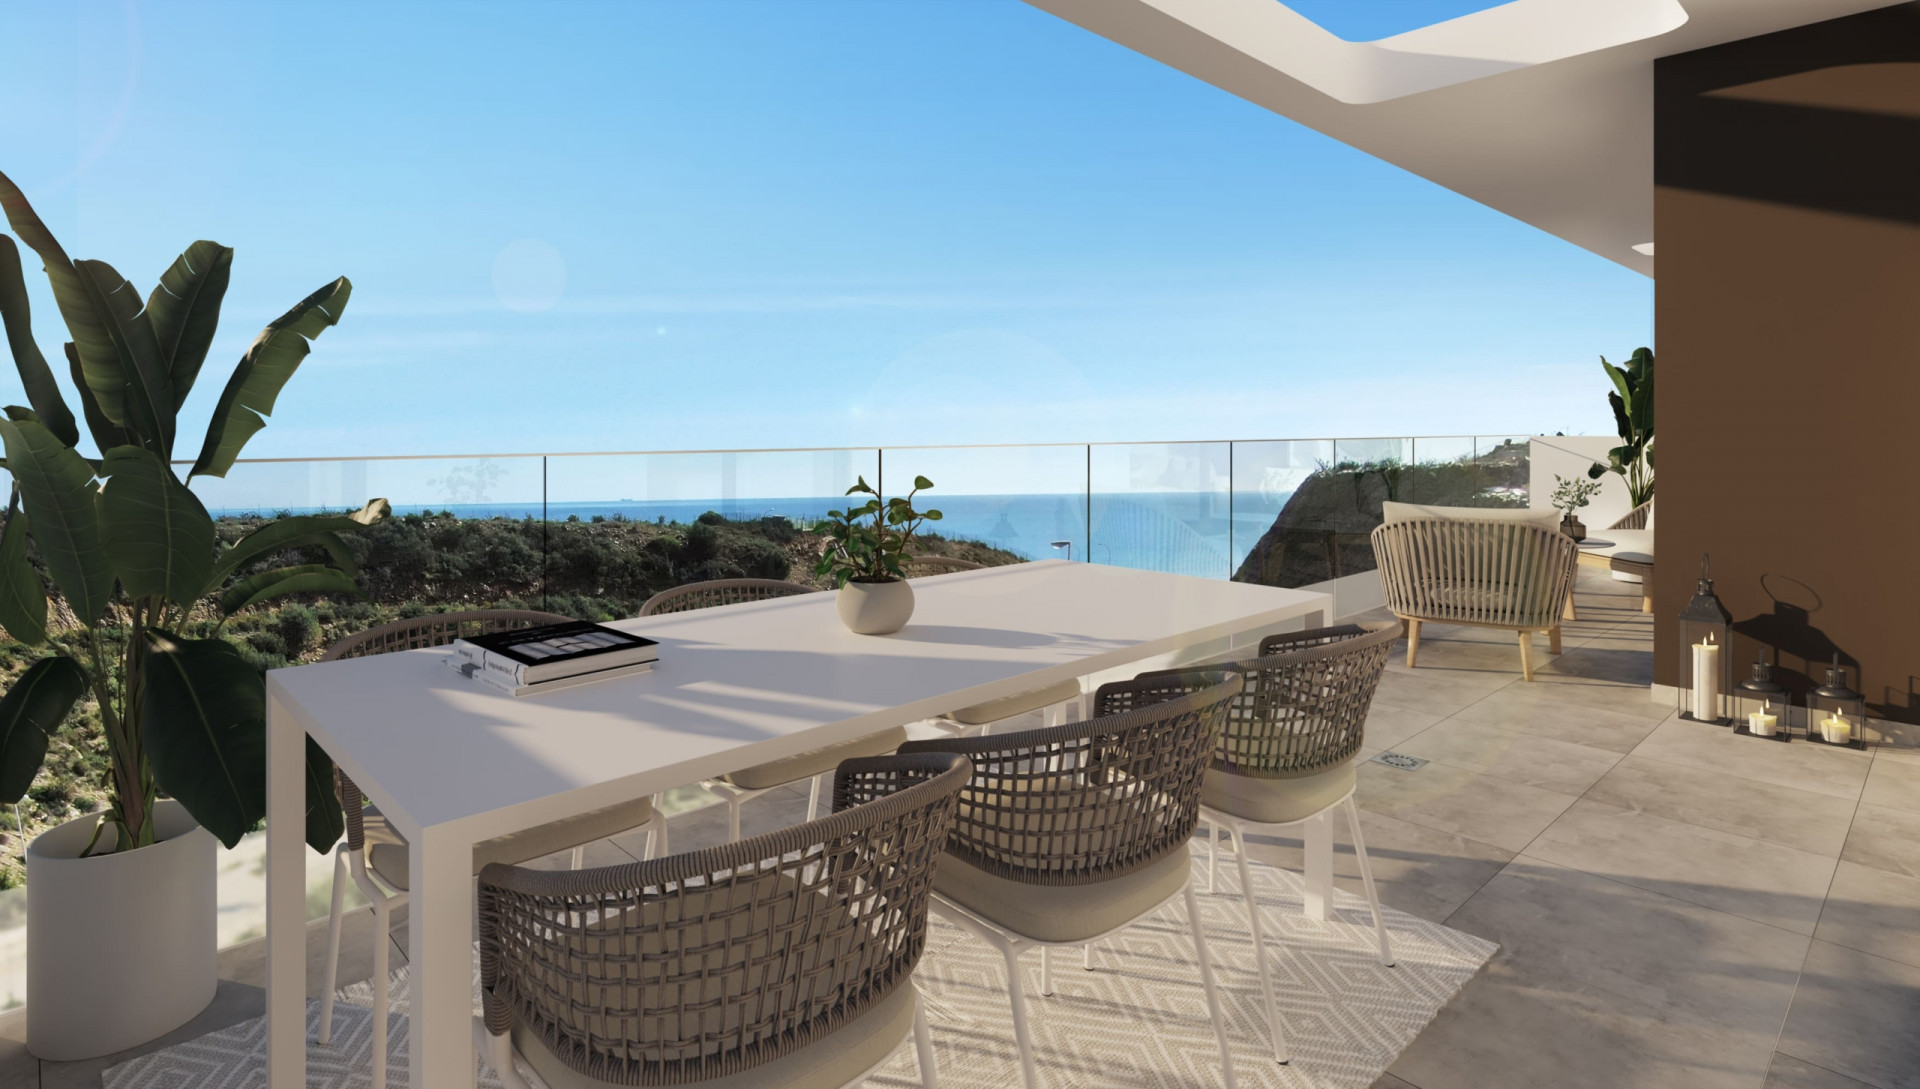 Idilia Terram: Exclusive development of 22 homes with incredible sea views in Rincón de la Victoria. | Image 15